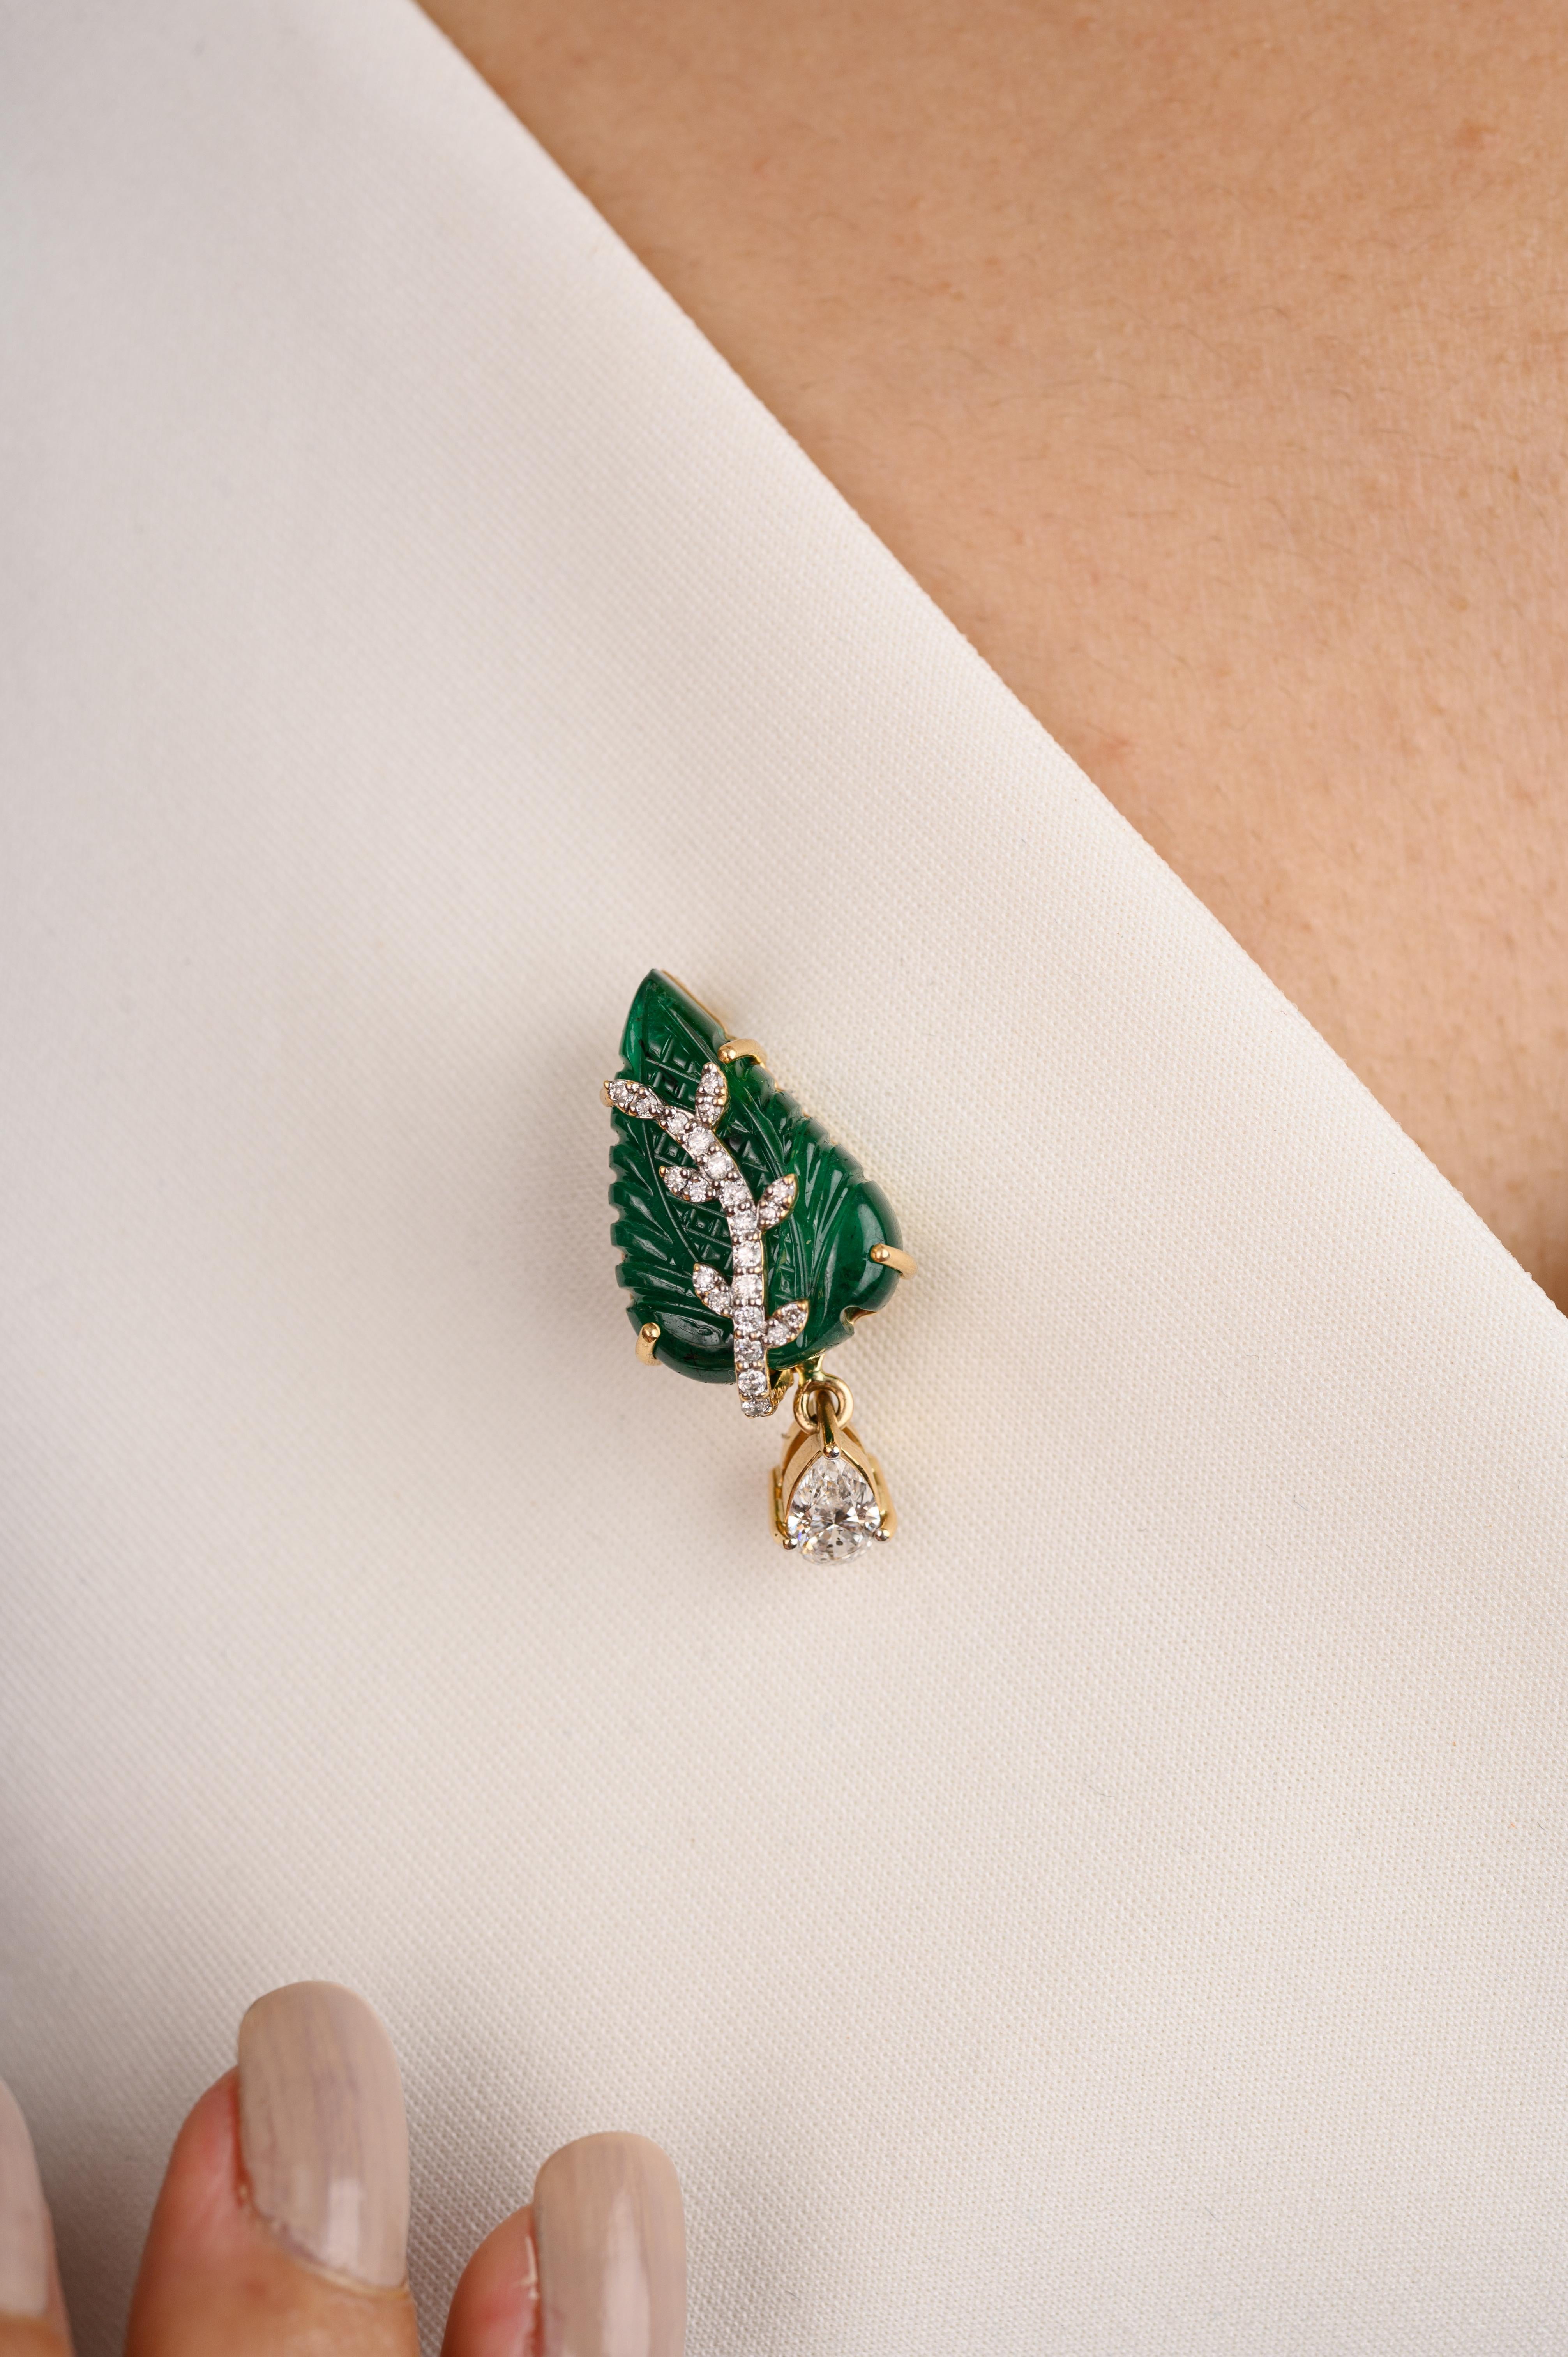 Unisex 9.99 Carat Carved Leaf Emerald Brooch mit Diamanten Made in 18K Gold, die eine Verschmelzung von Surrealismus und Pop-Art, entworfen, um eine kühne Aussage zu machen ist. Der mit viel Liebe zum Detail gefertigte Smaragd mit 9.99 Karat hebt